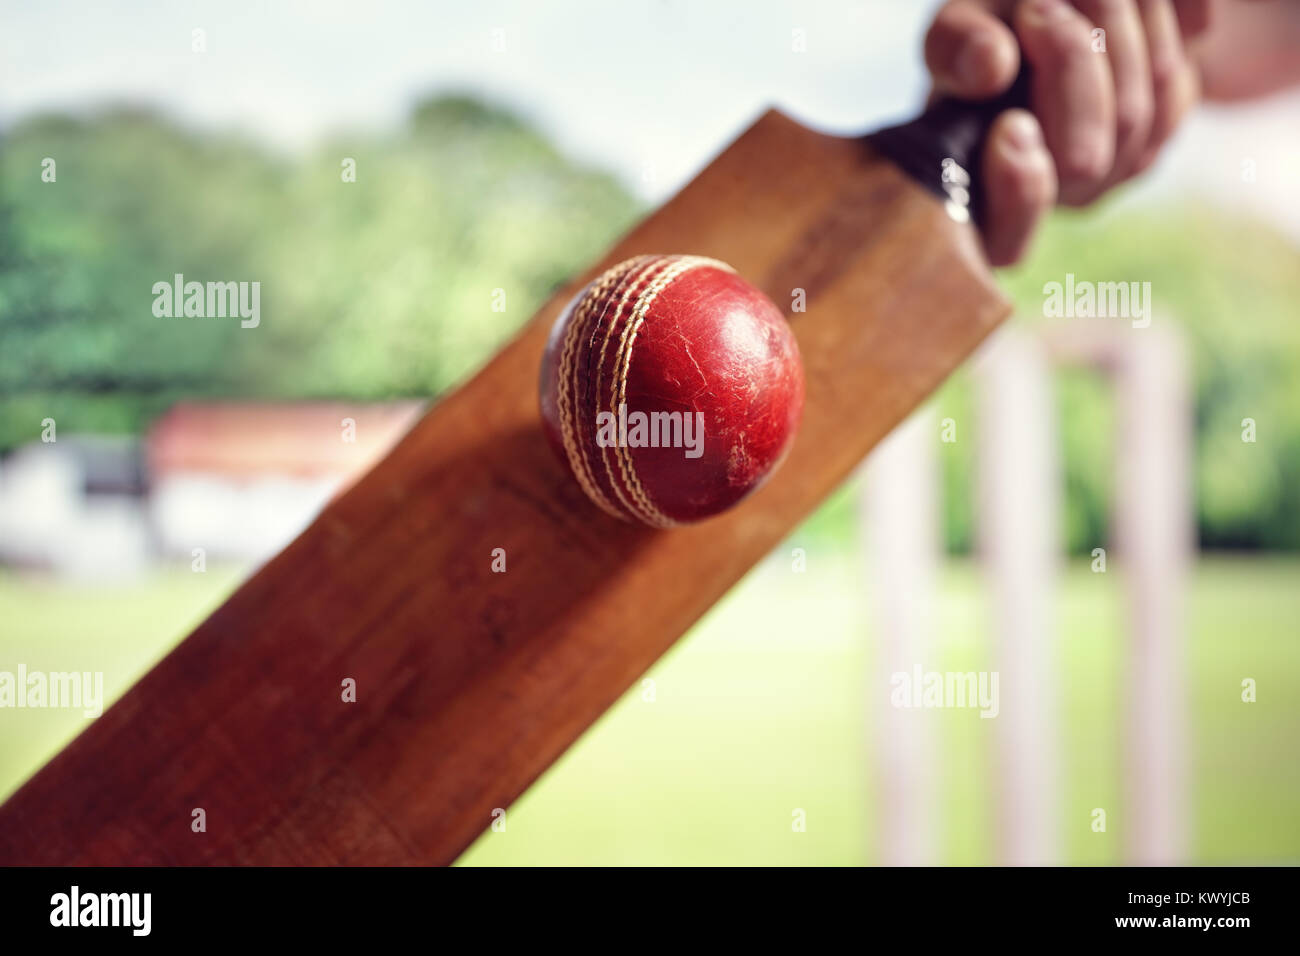 Bateador de cricket golpeando una pelota shot desde abajo con muñones cricket pitch Foto de stock